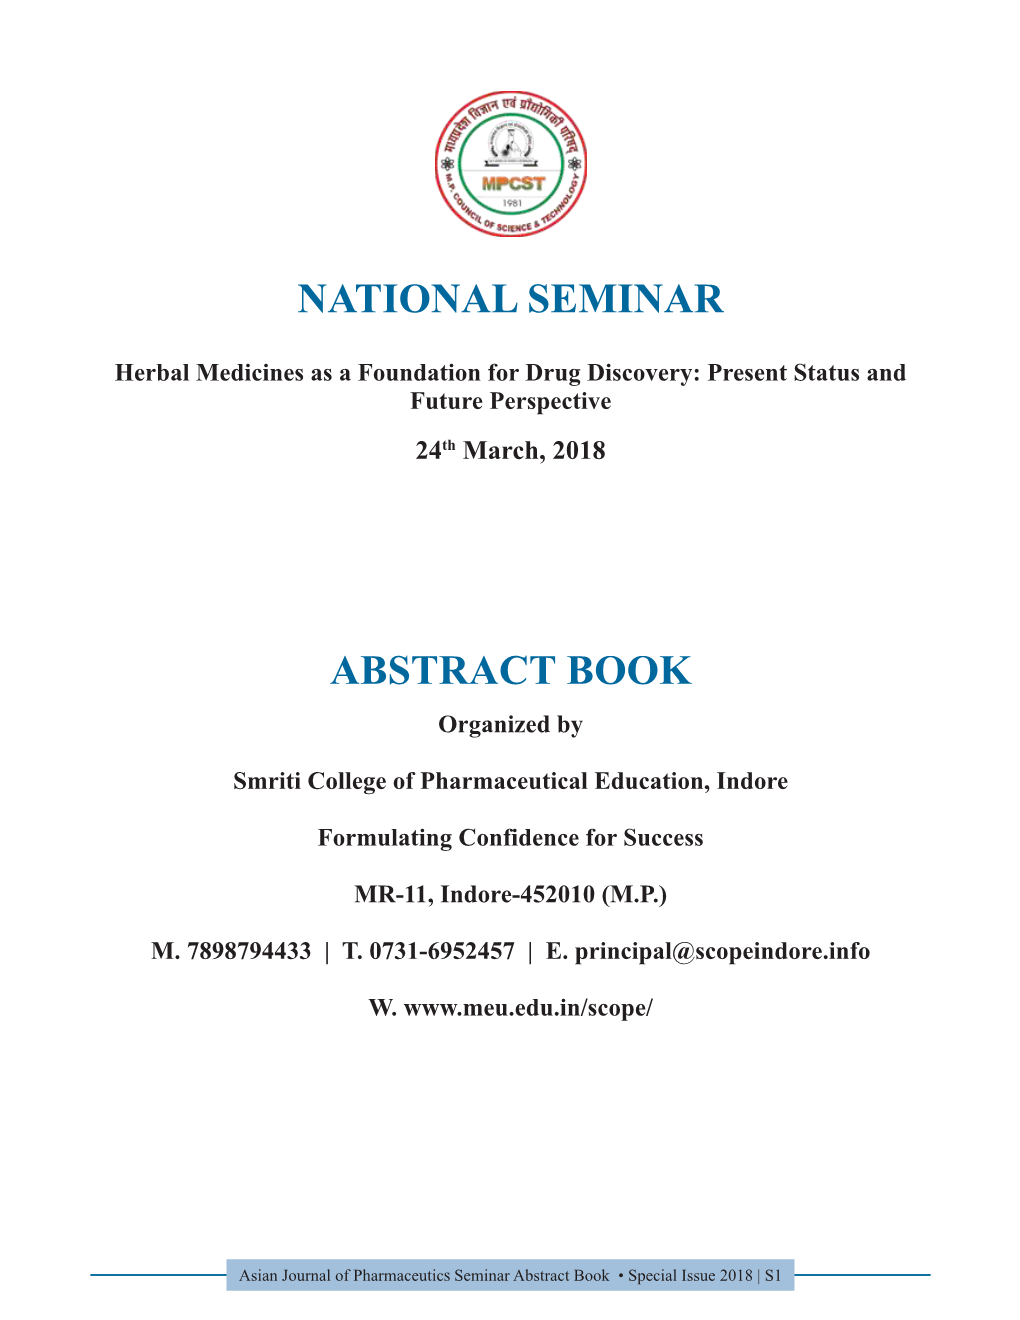 Abstract Book of National Seminar